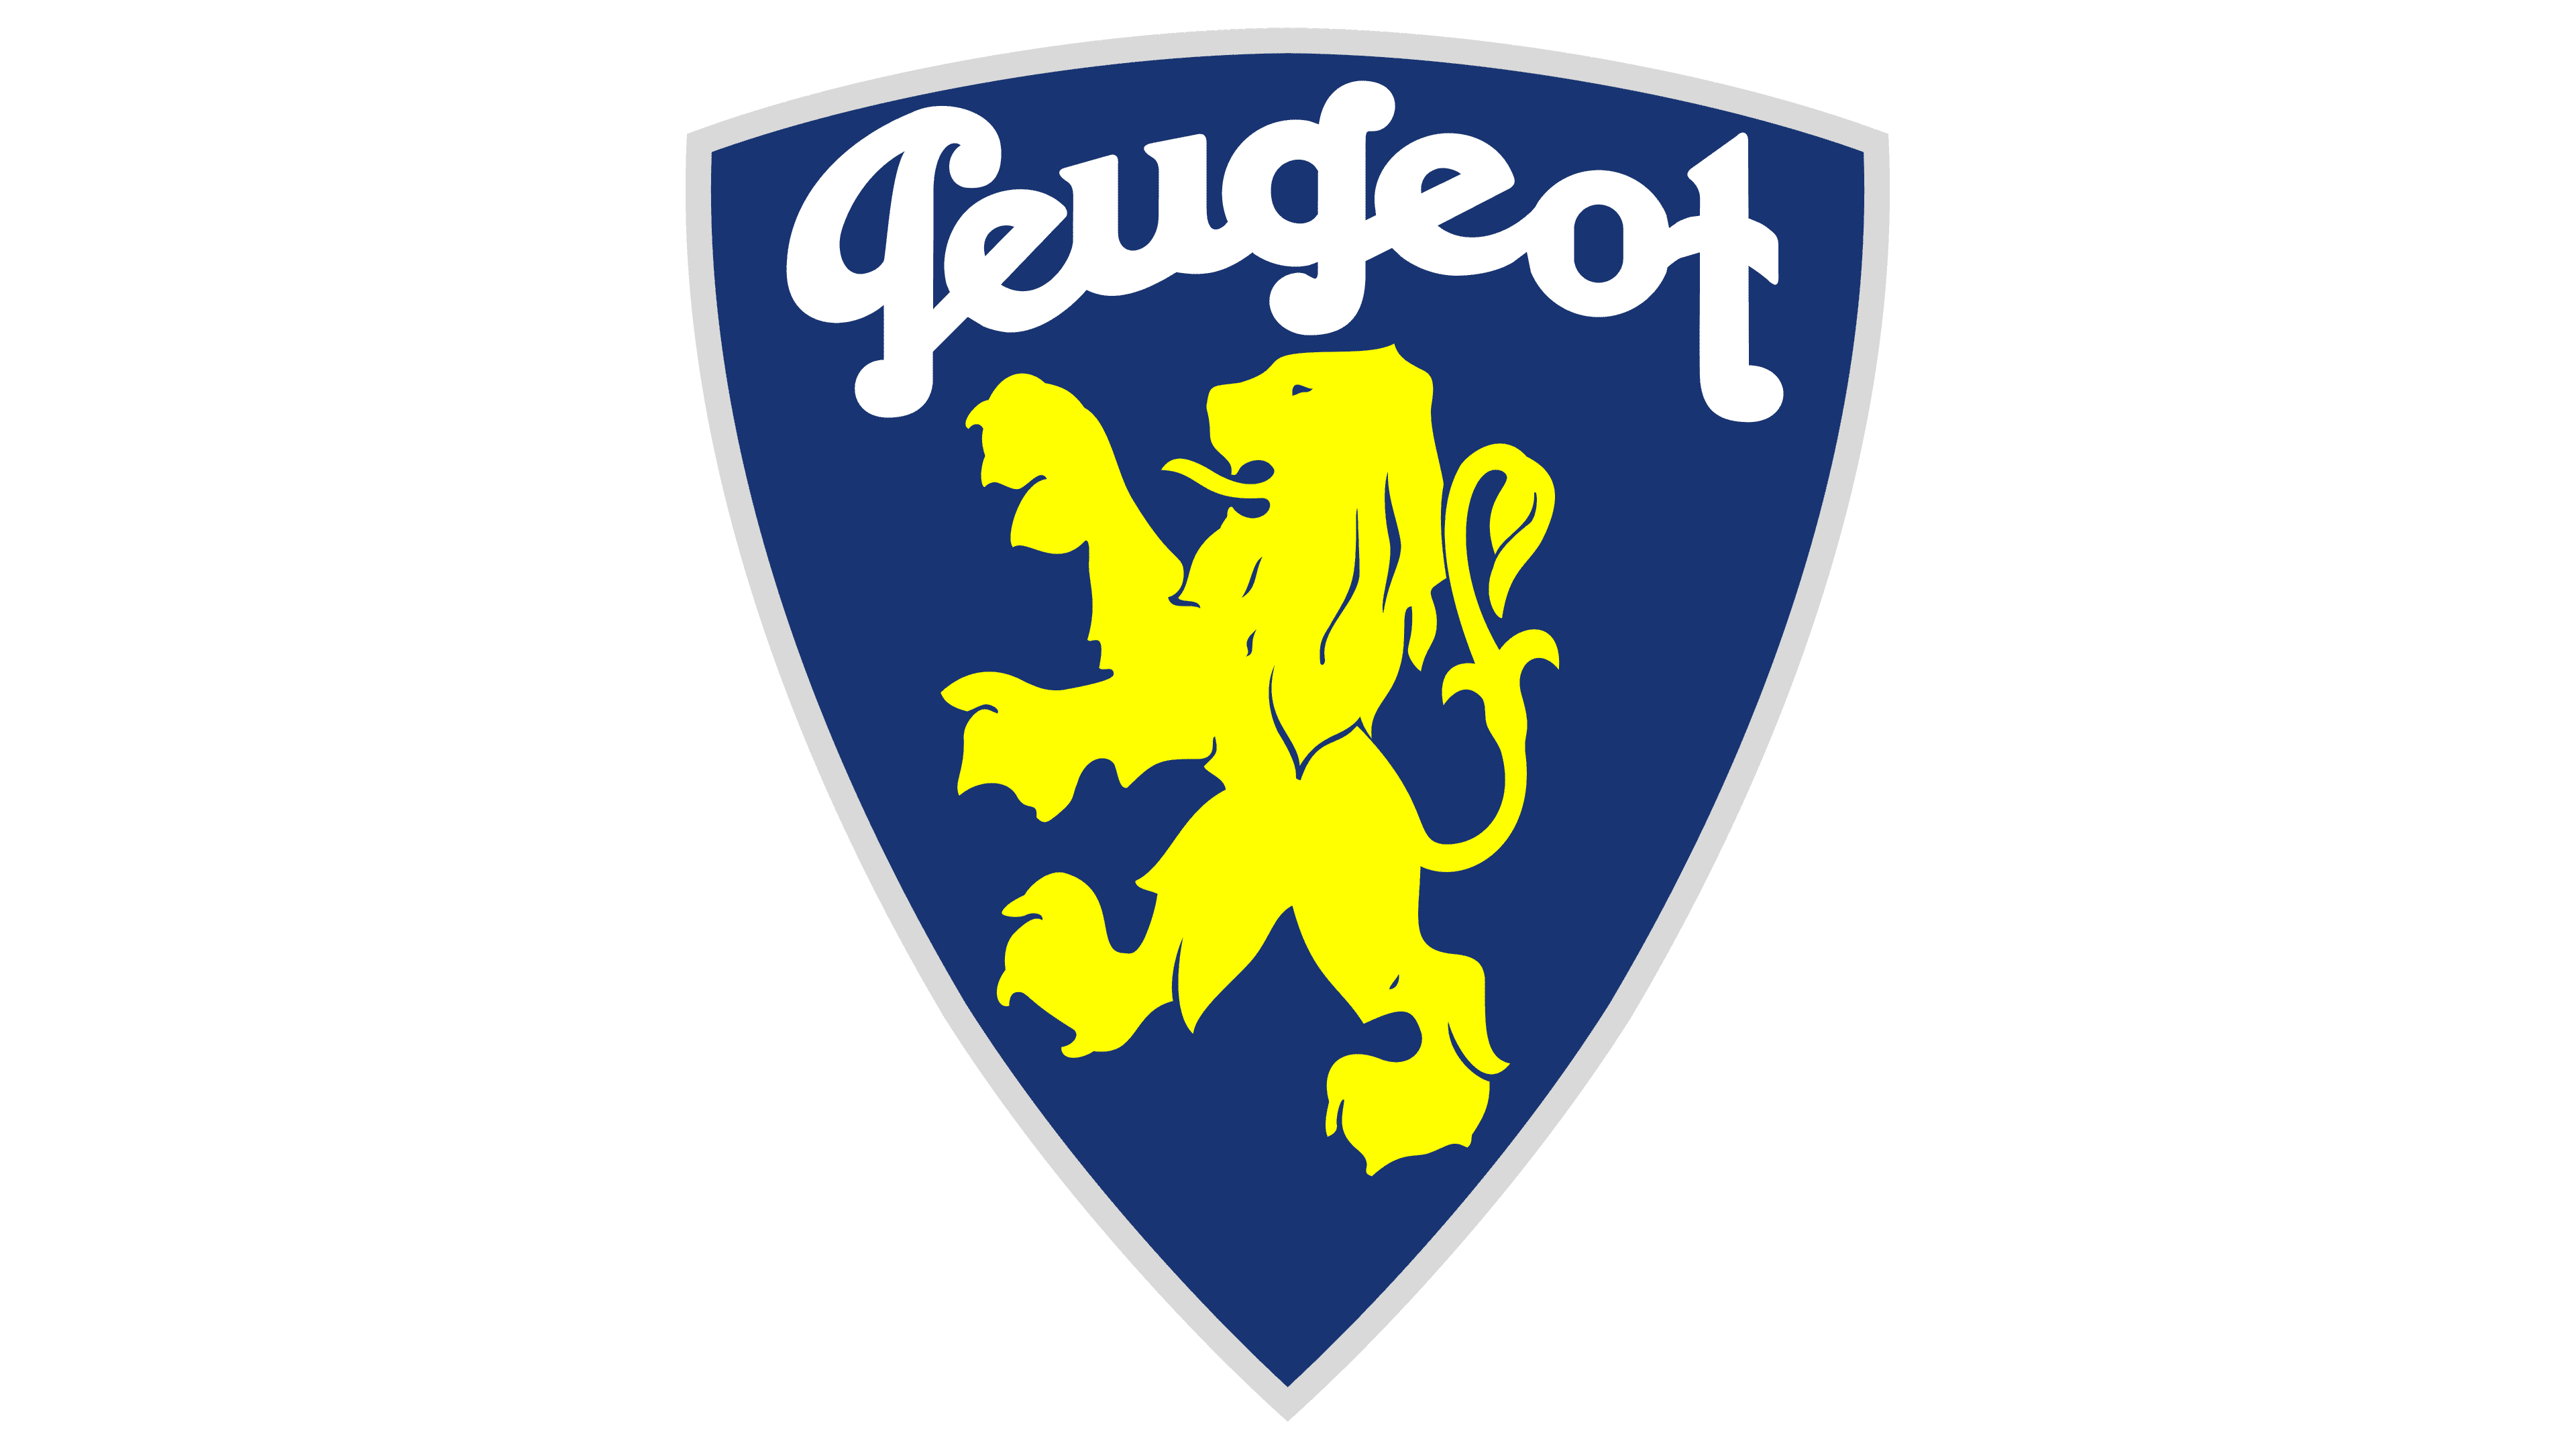 Vintage Peugeot emblem - Peugeot - Sticker